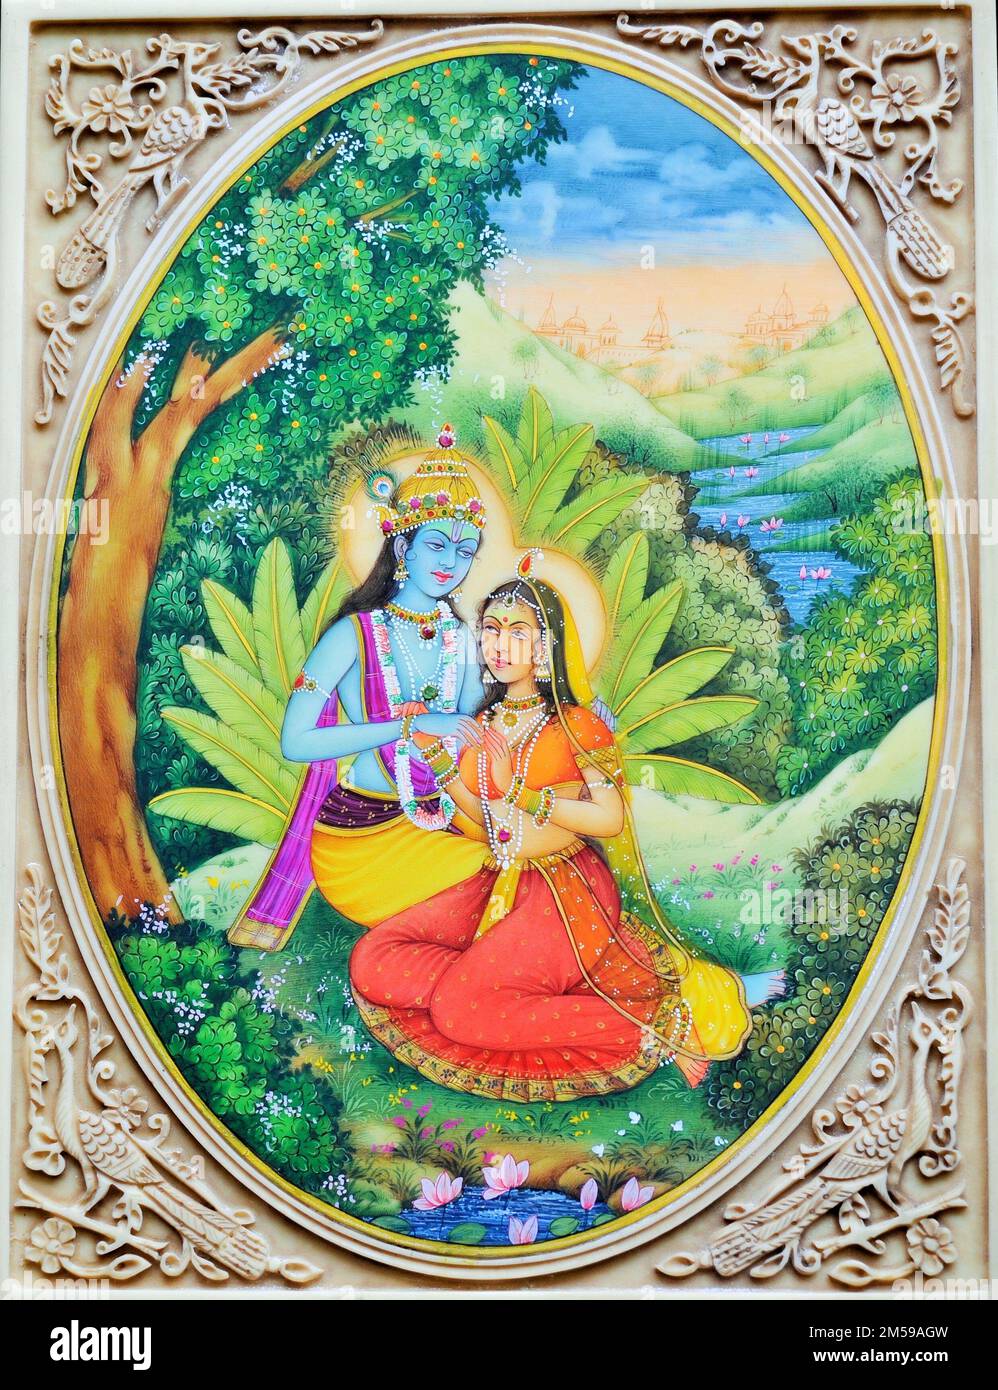 Radha Krishna loving garden artwork painting Stock Photo